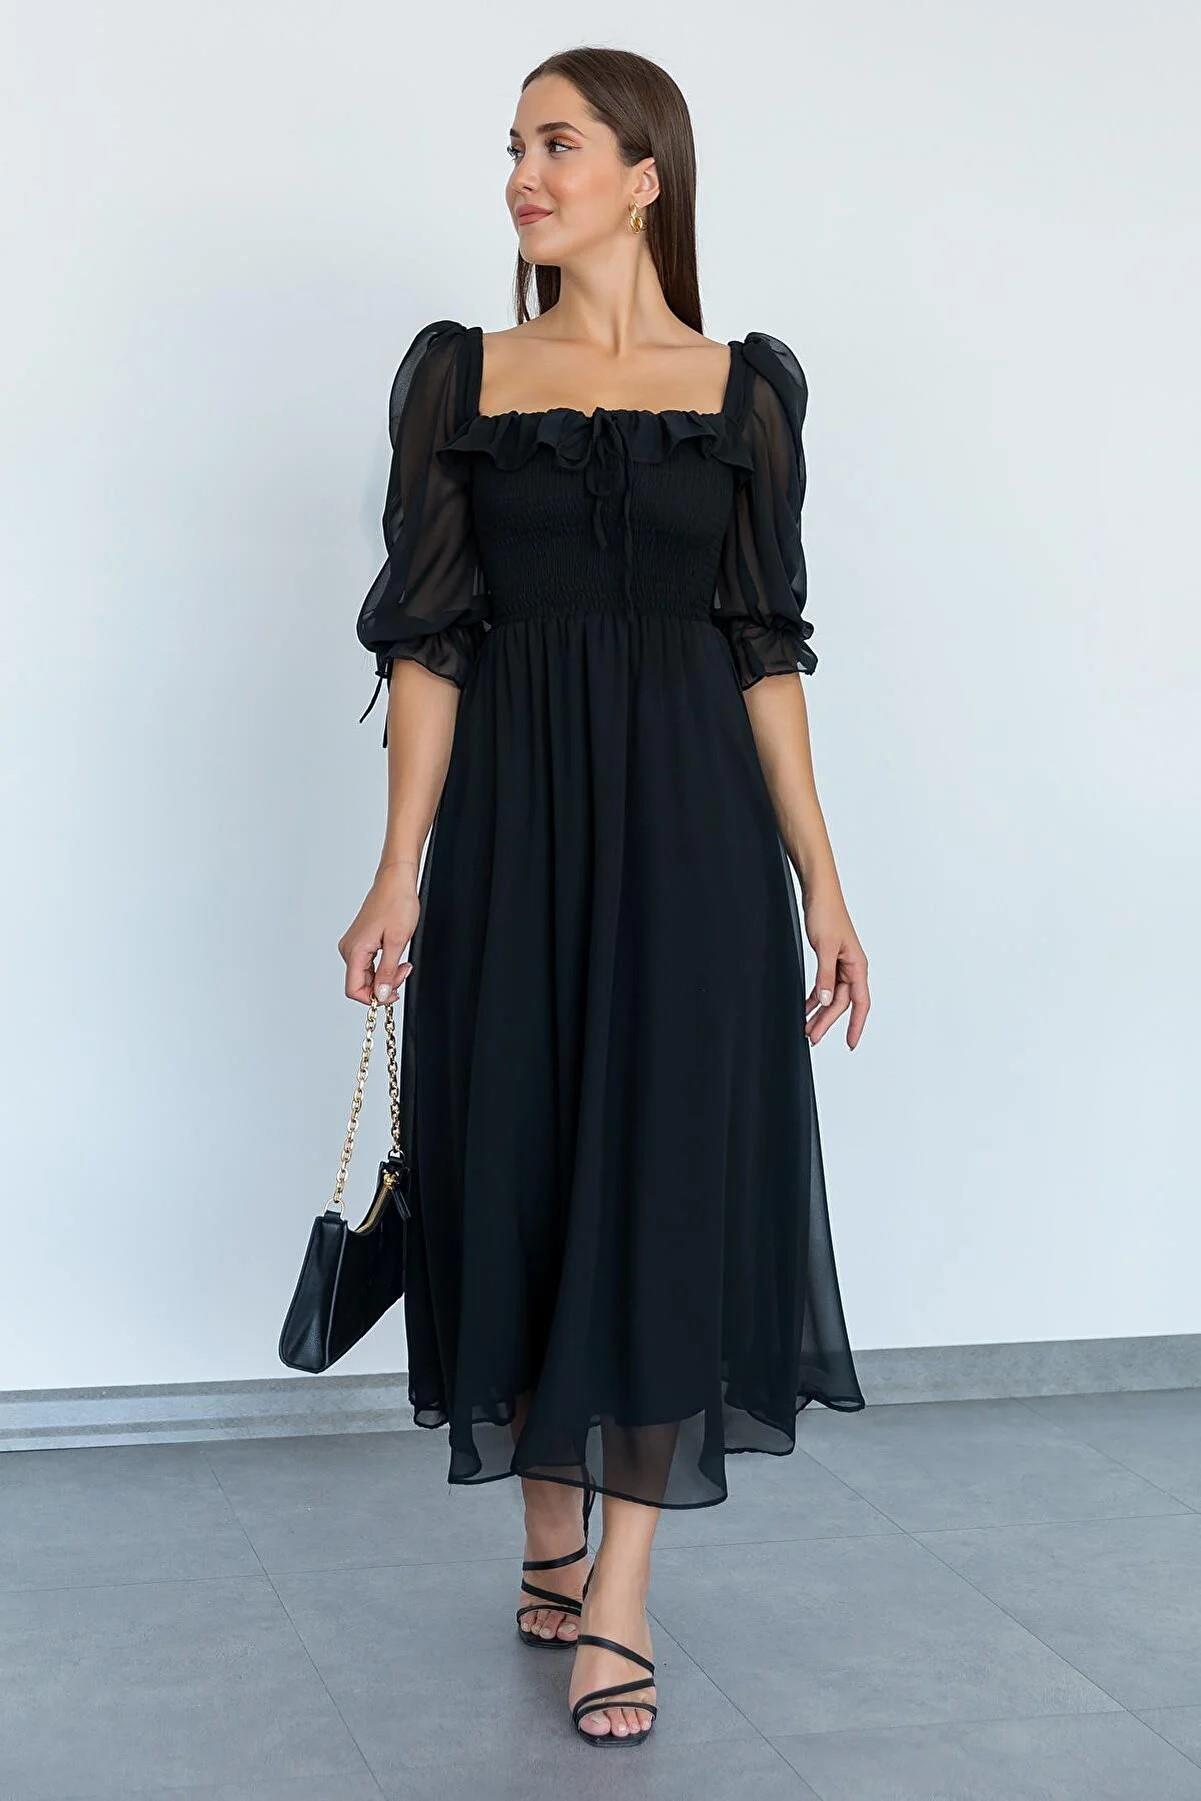 Lila Esnek Krep Kumaş Kalın Askı Tasarım Kare Yaka Midi Elbise 086